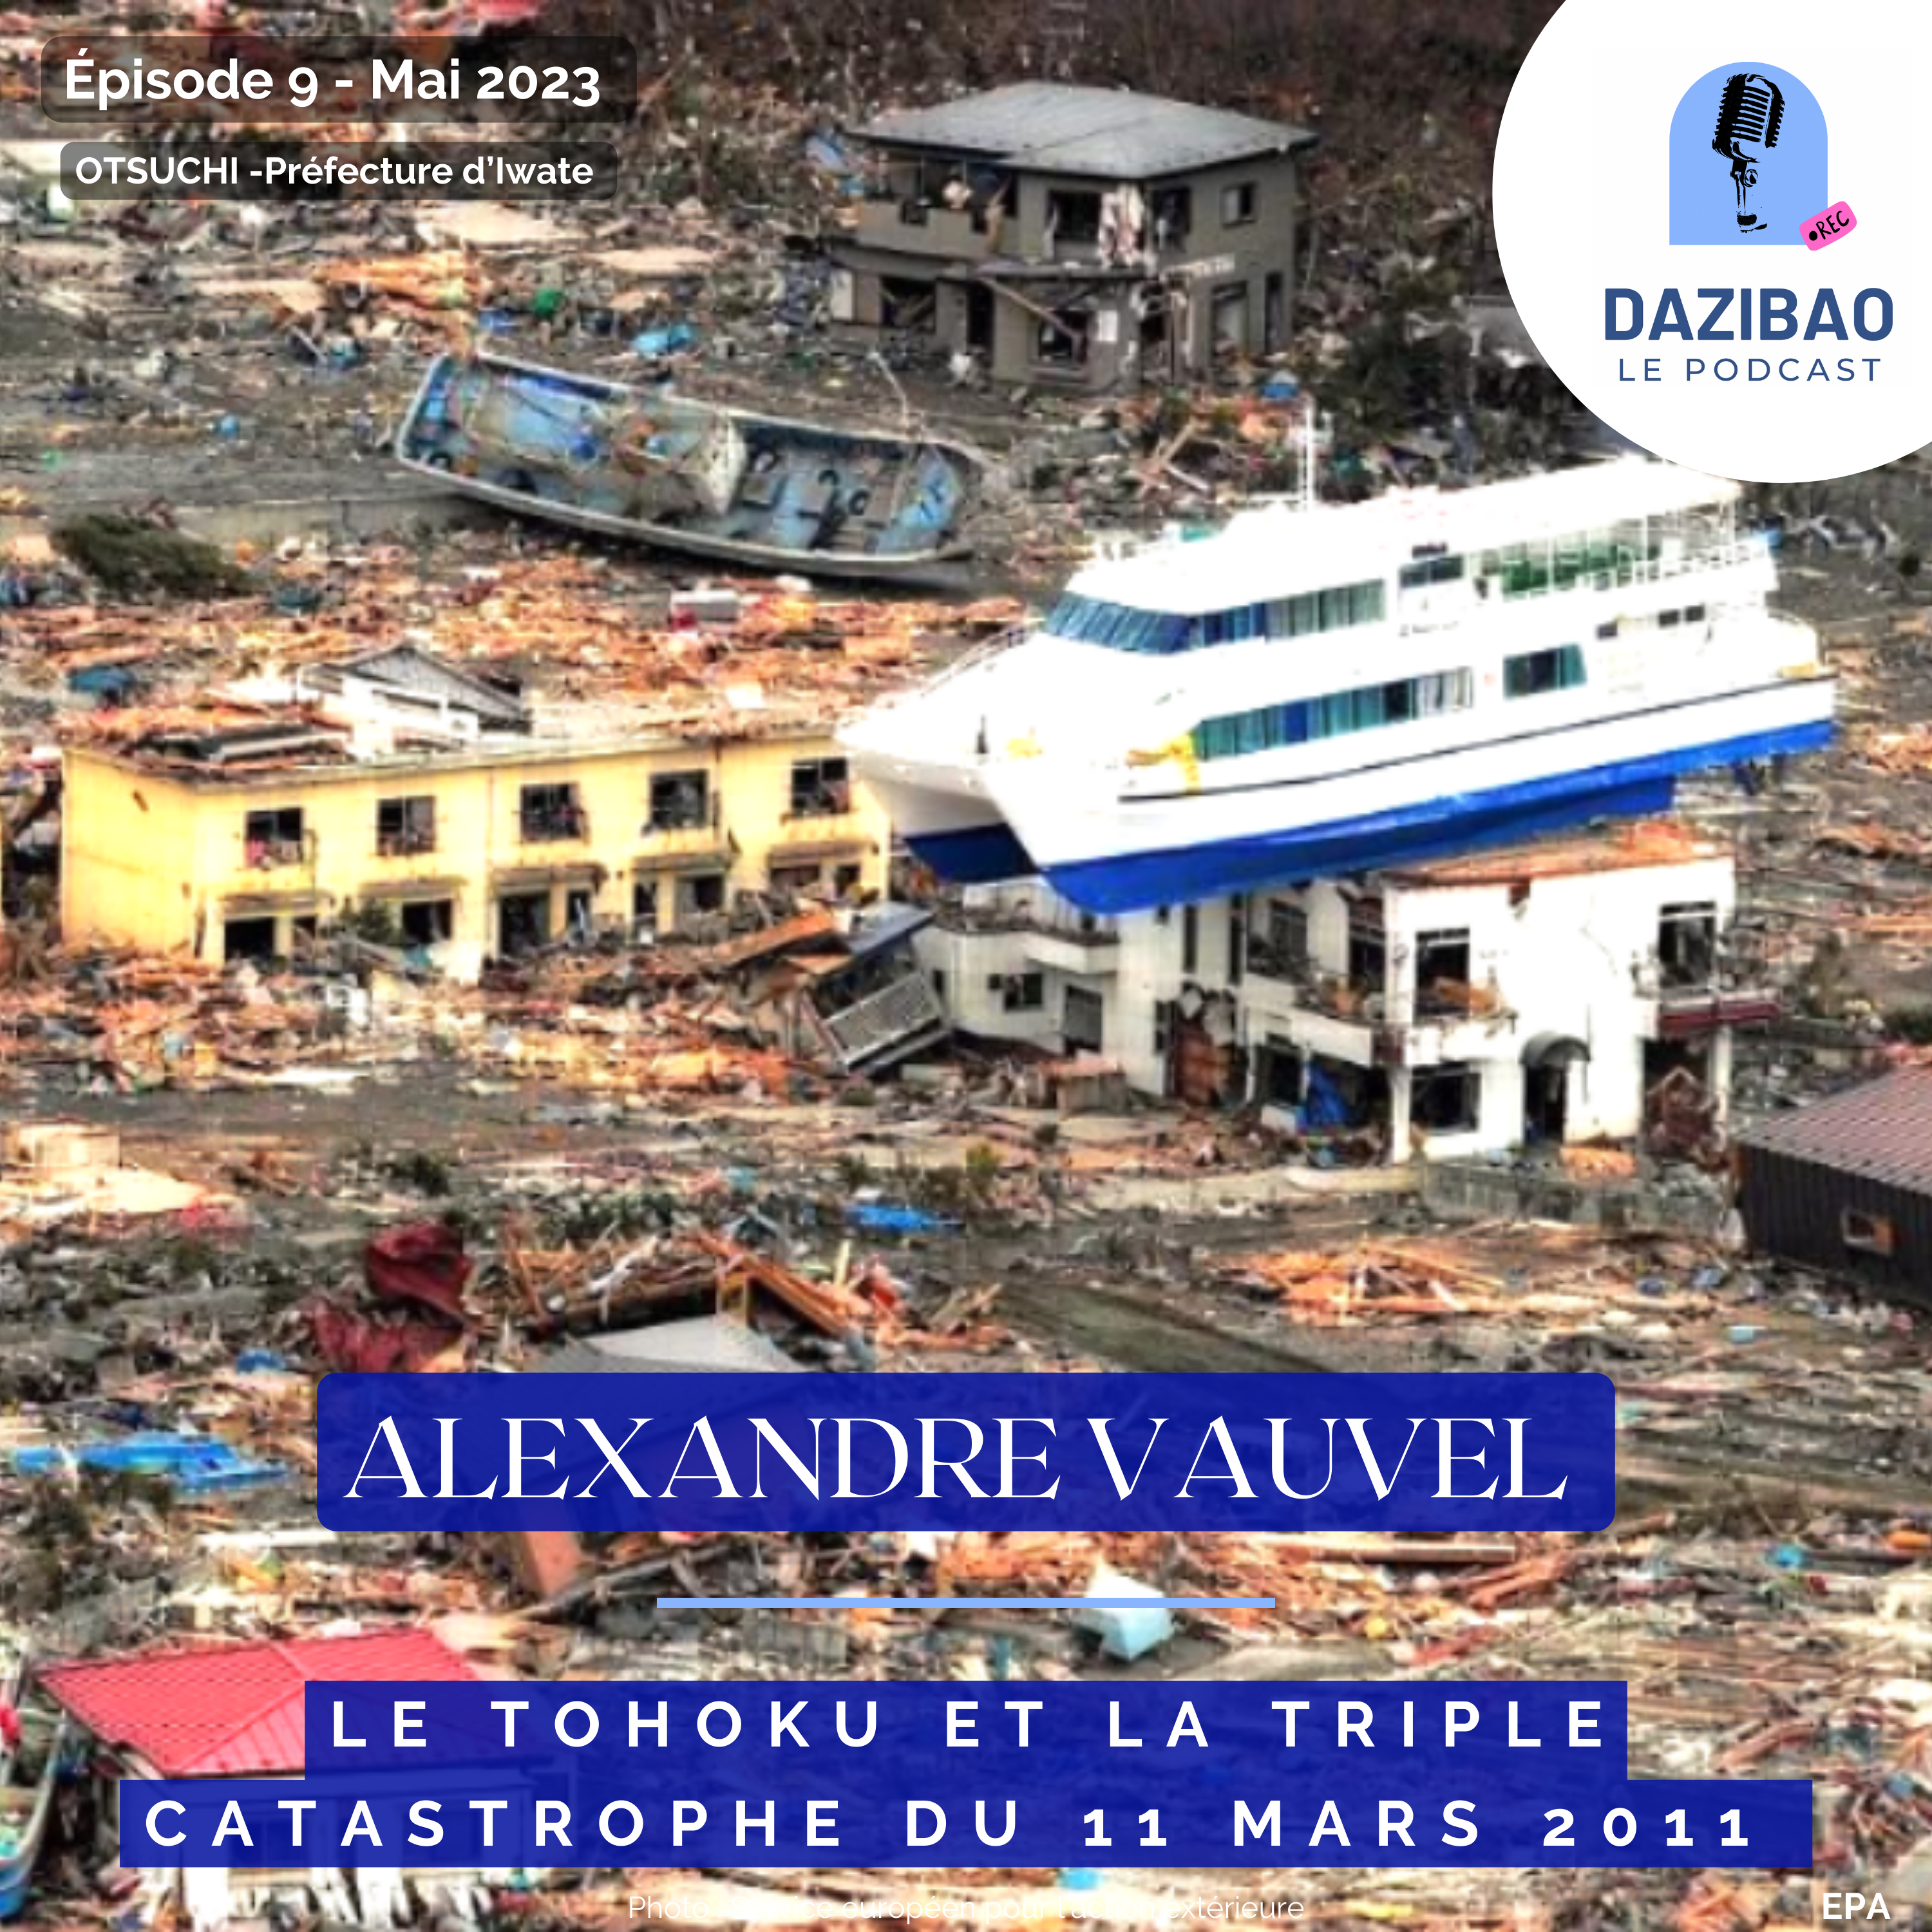 Épisode 9 : Alexandre, le Tohoku et la triple catastrophe du 11 mars 2011